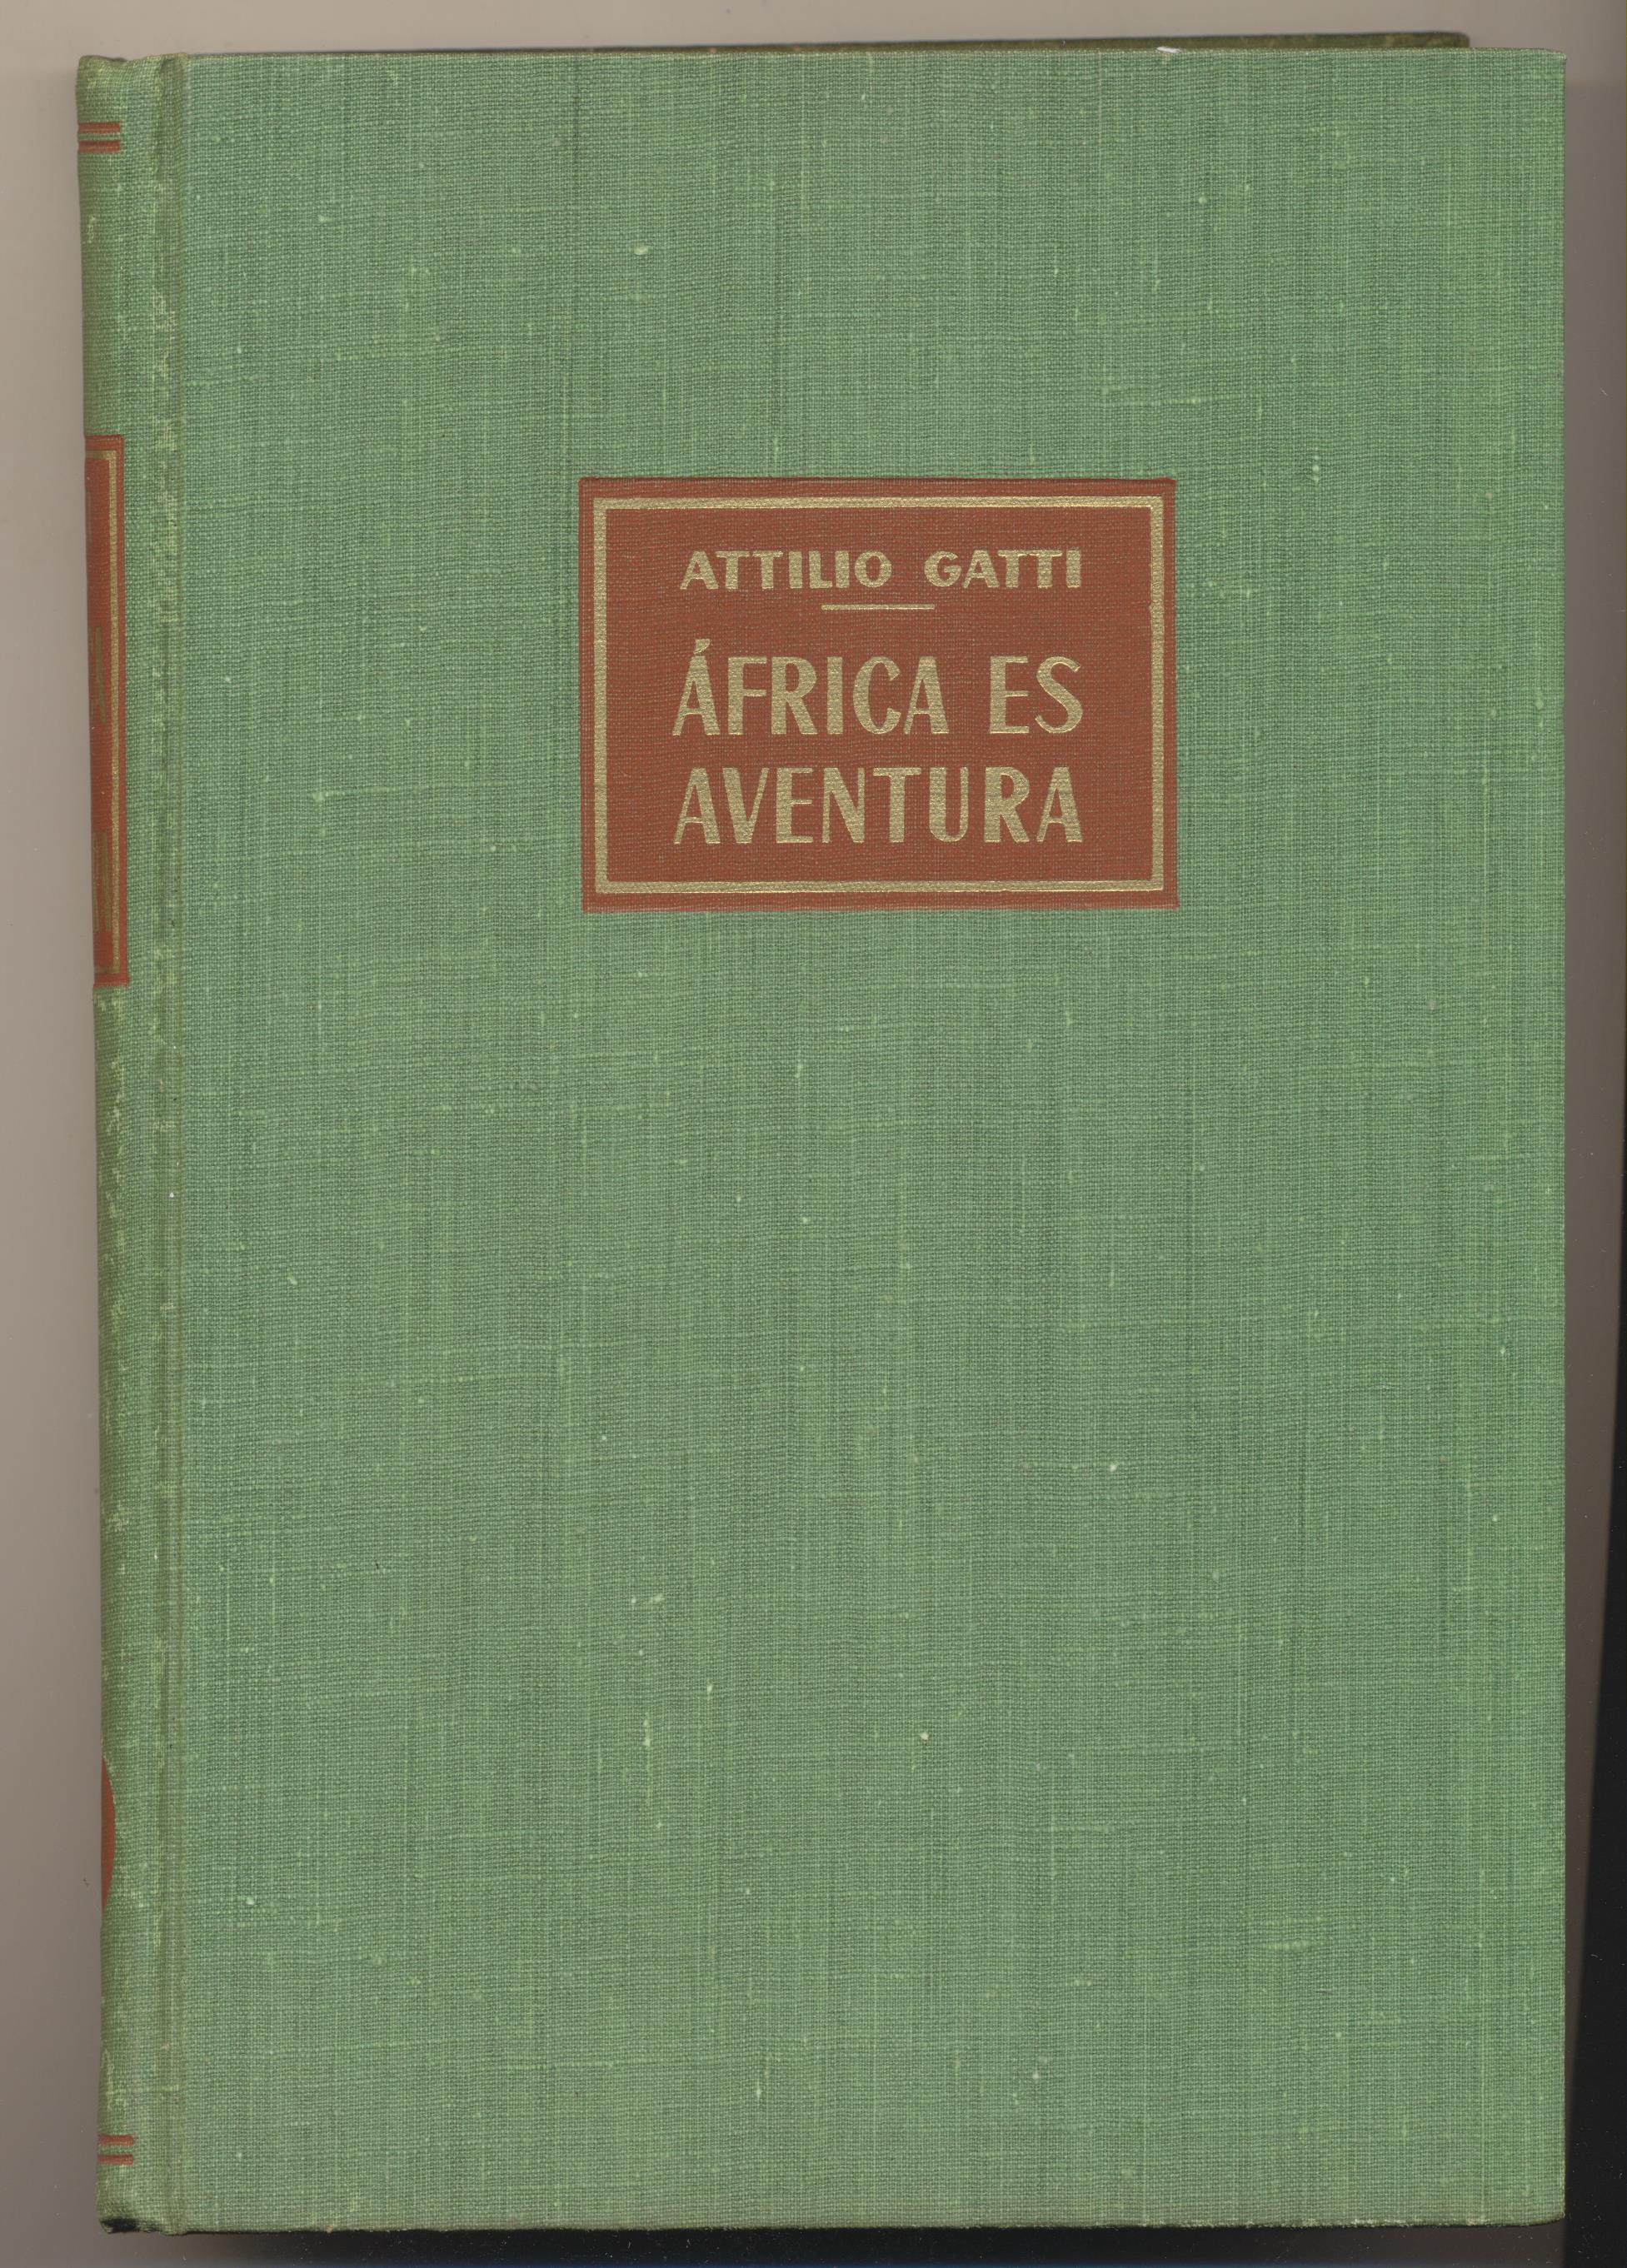 Atilio Gatti. África es aventura. Editorial labor 1963